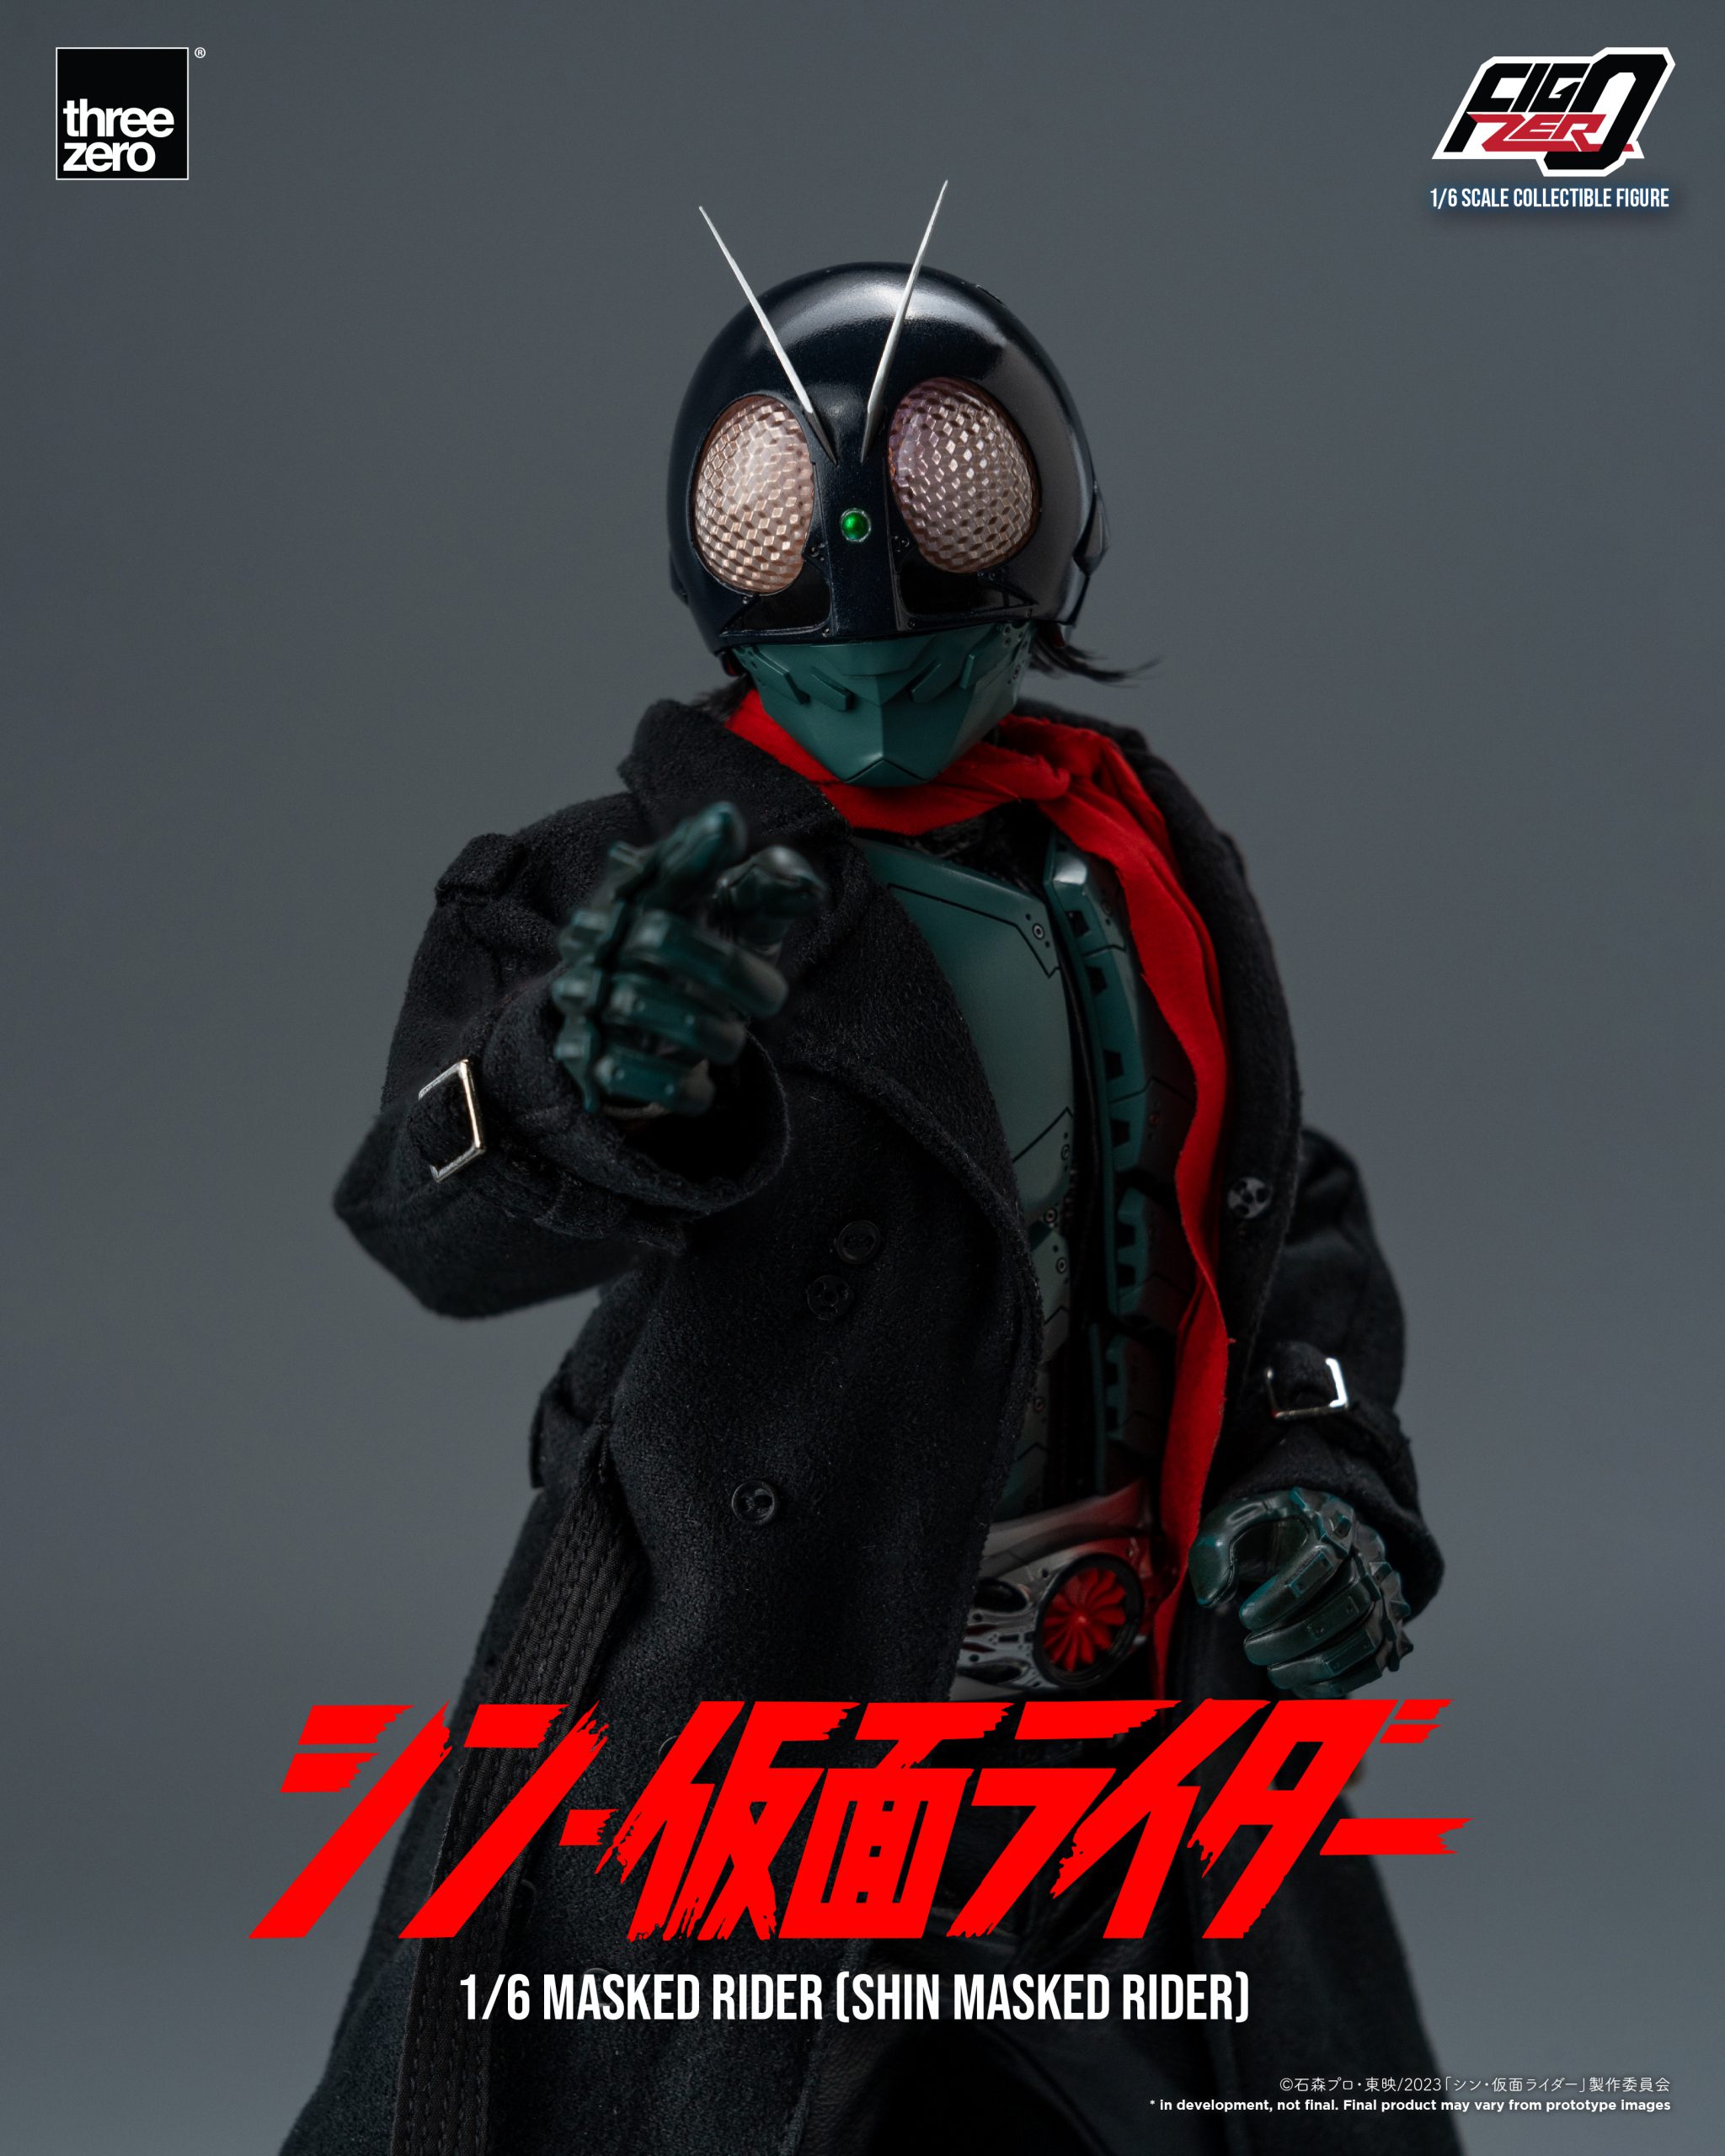 threezero - FigZero - Shin Masked Rider - Masked Rider (1/6 Scale) - Marvelous Toys